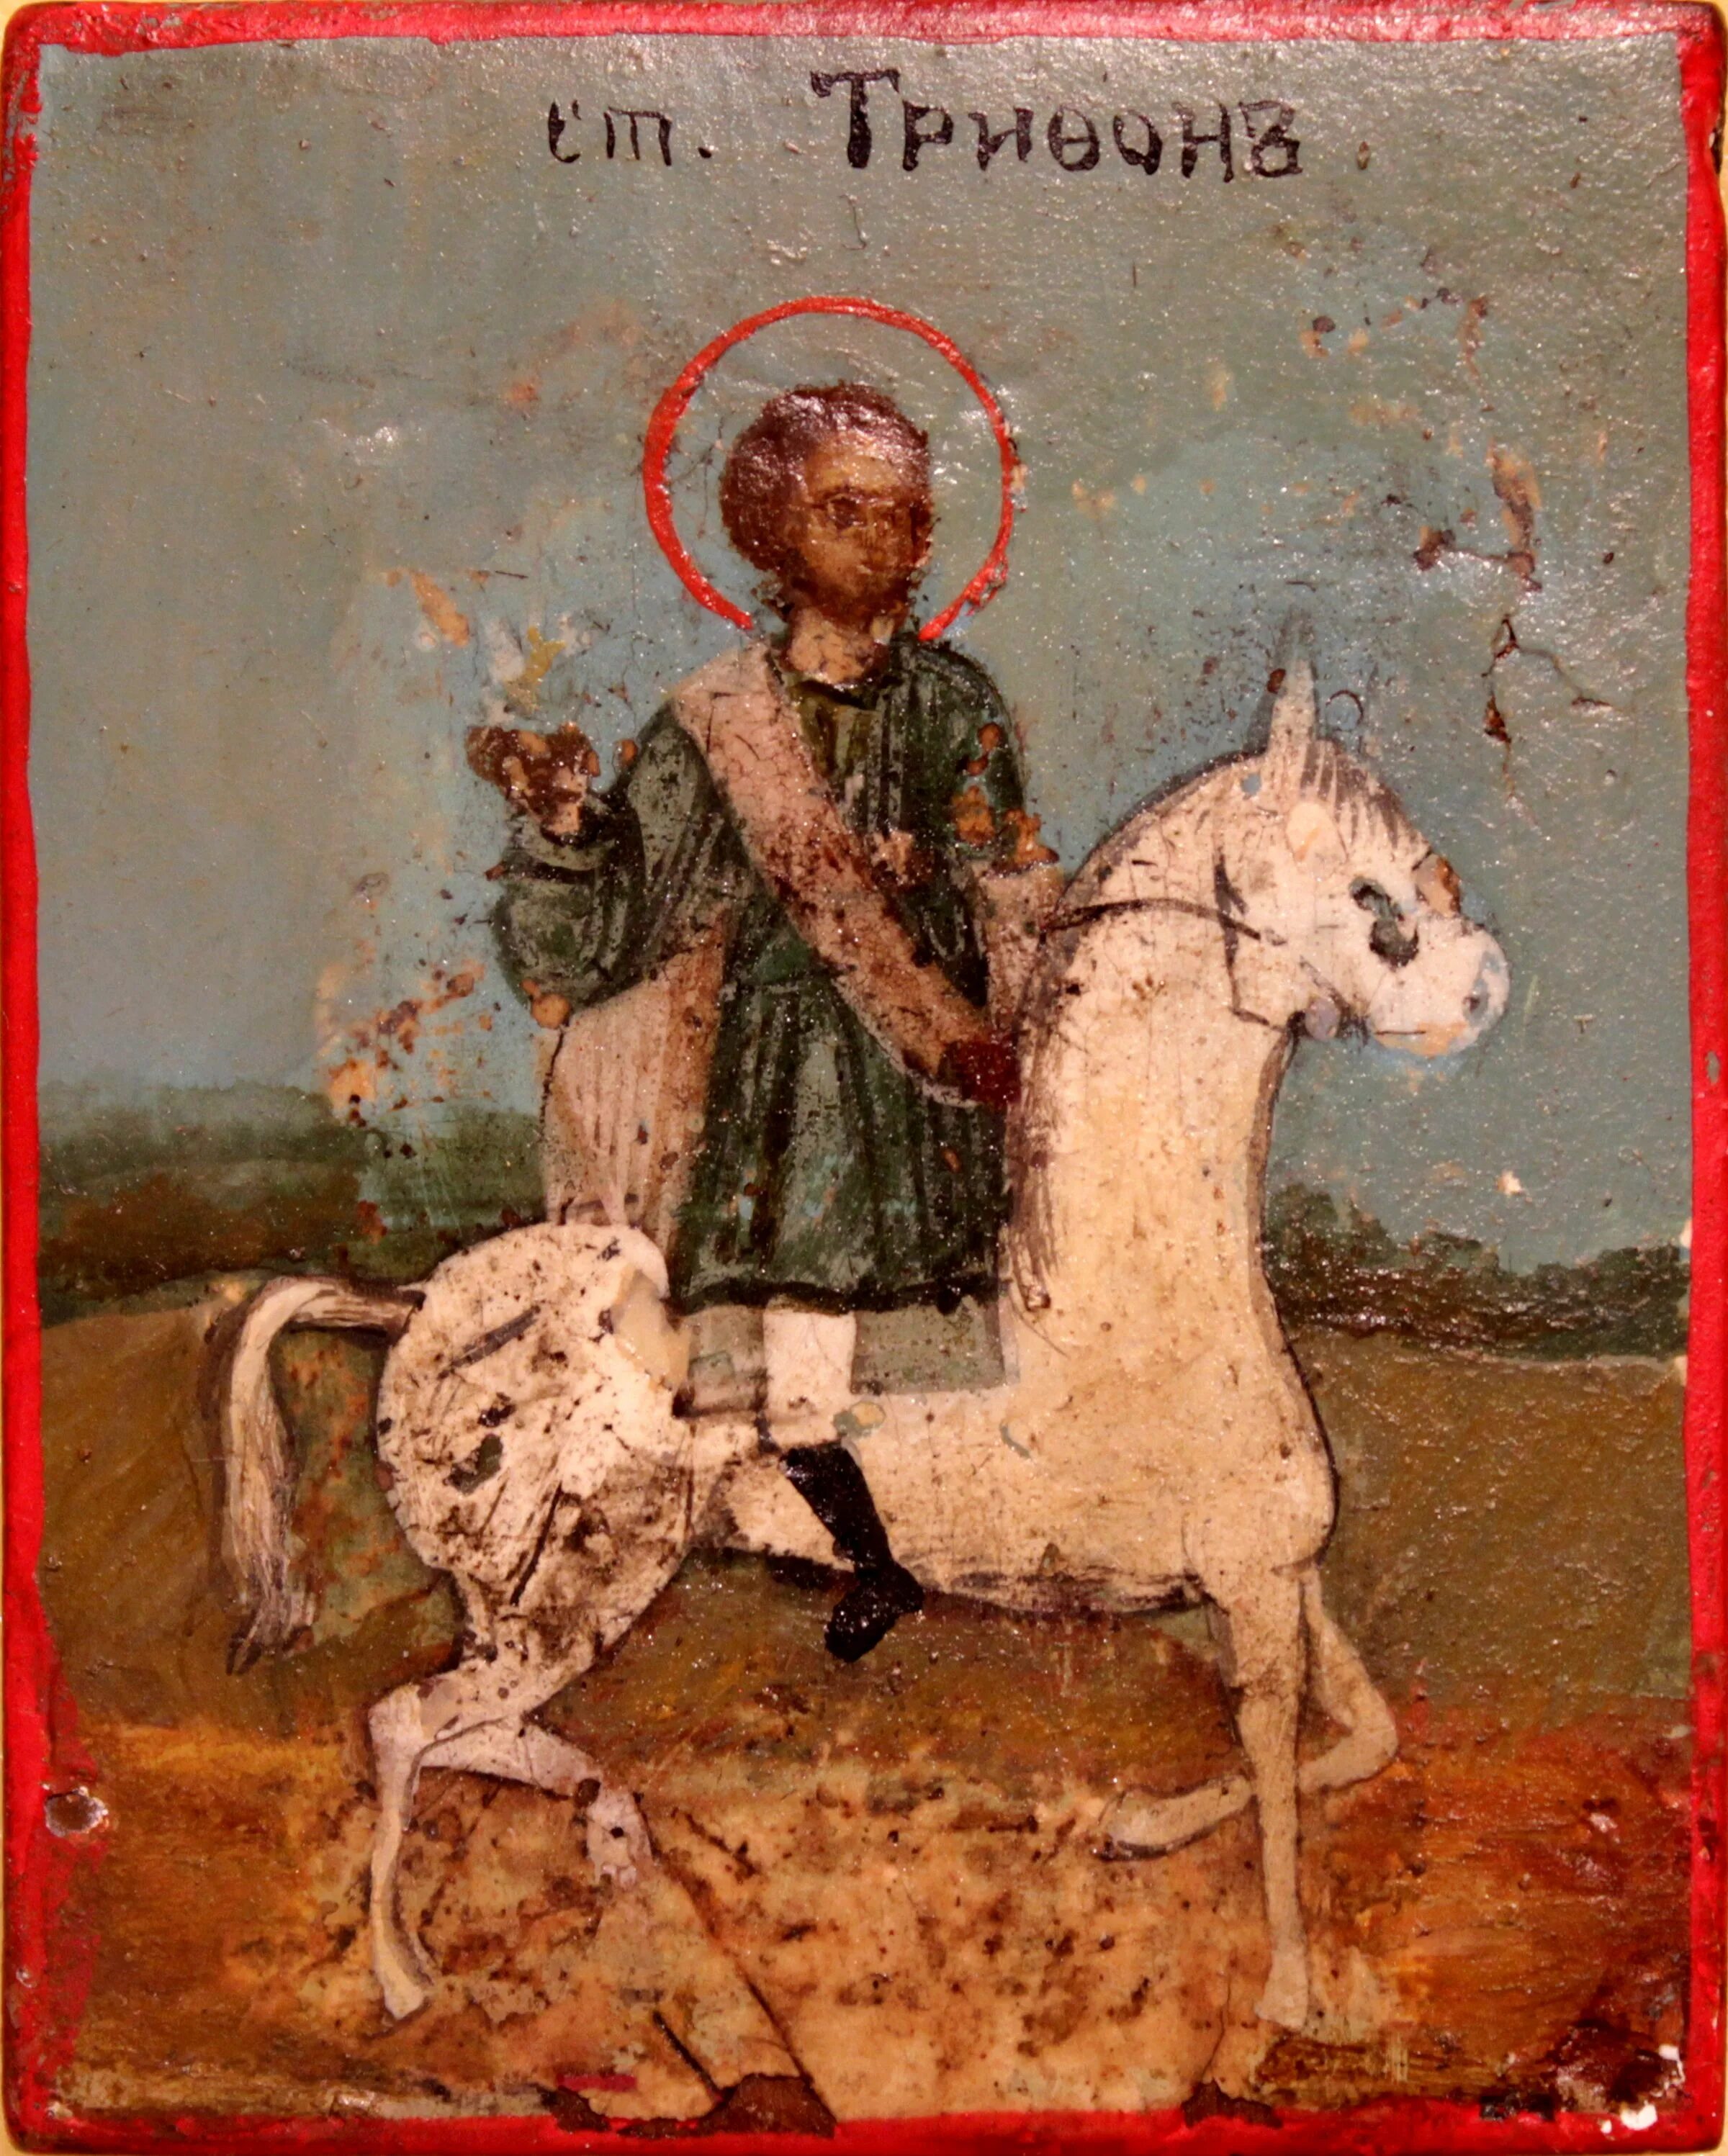 Икона Святого Трифона покровителя охотников. День святого трифона 14 покровителя охотников